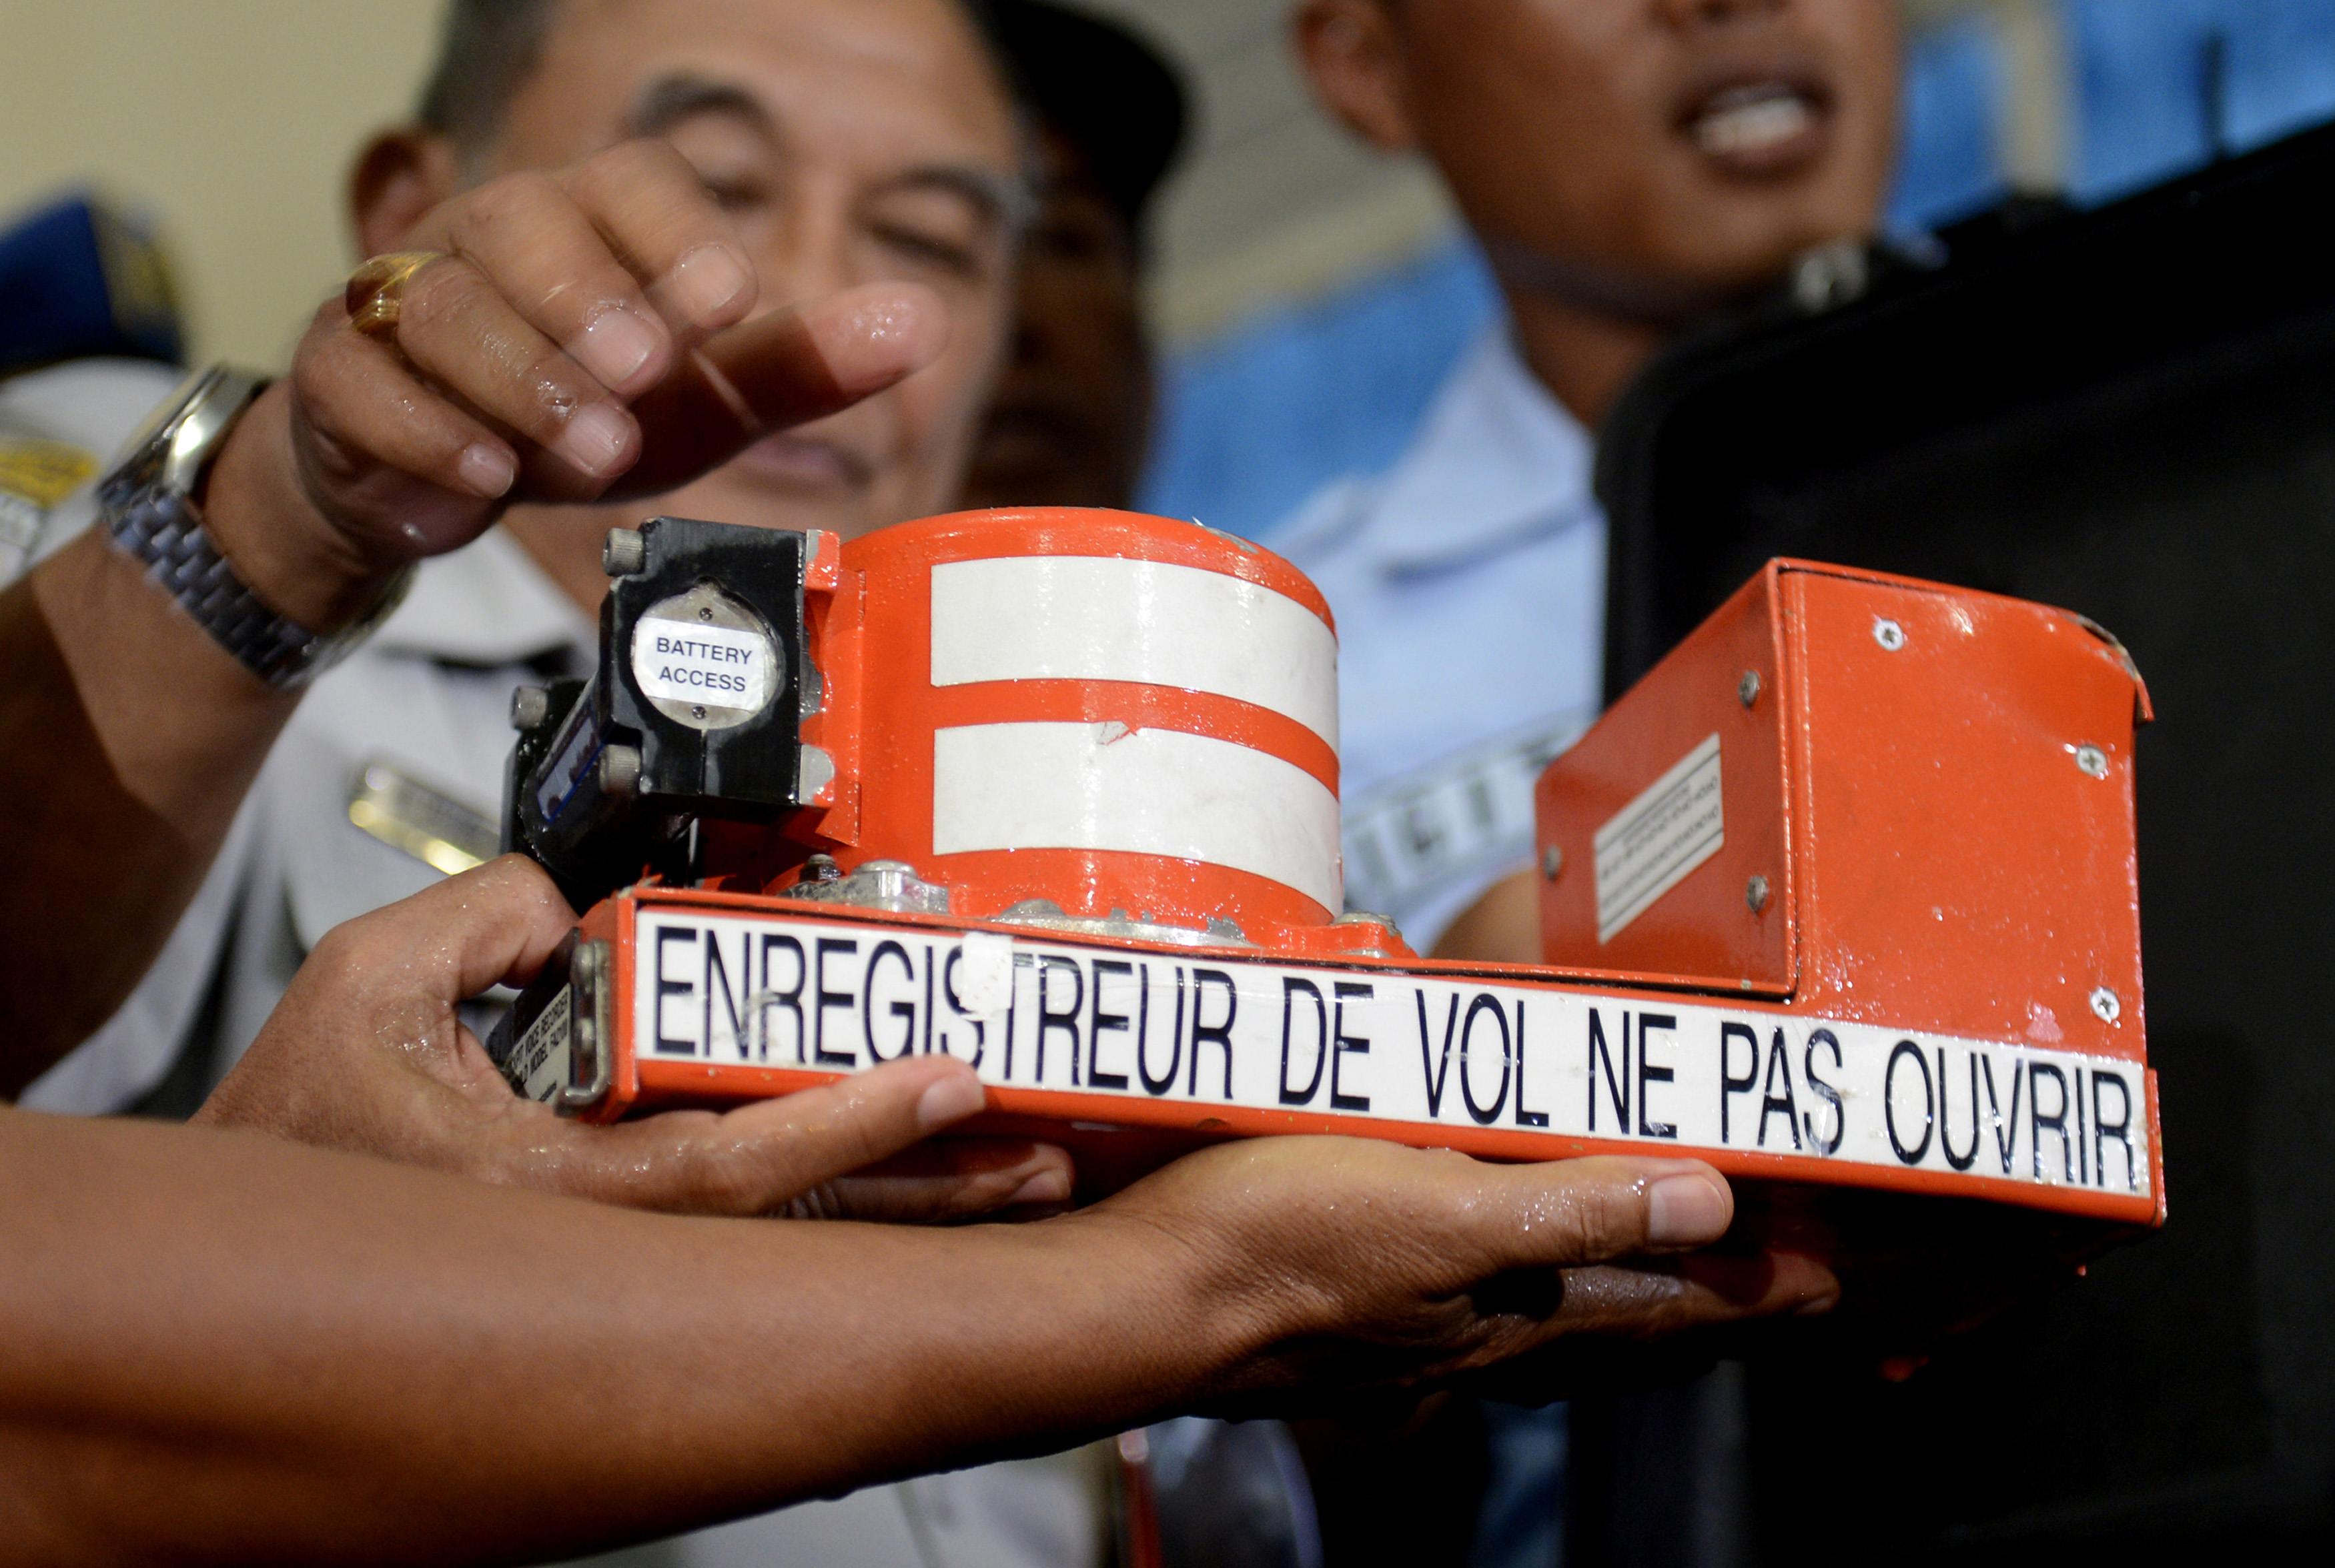 Indonesia will not make public preliminary AirAsia crash report